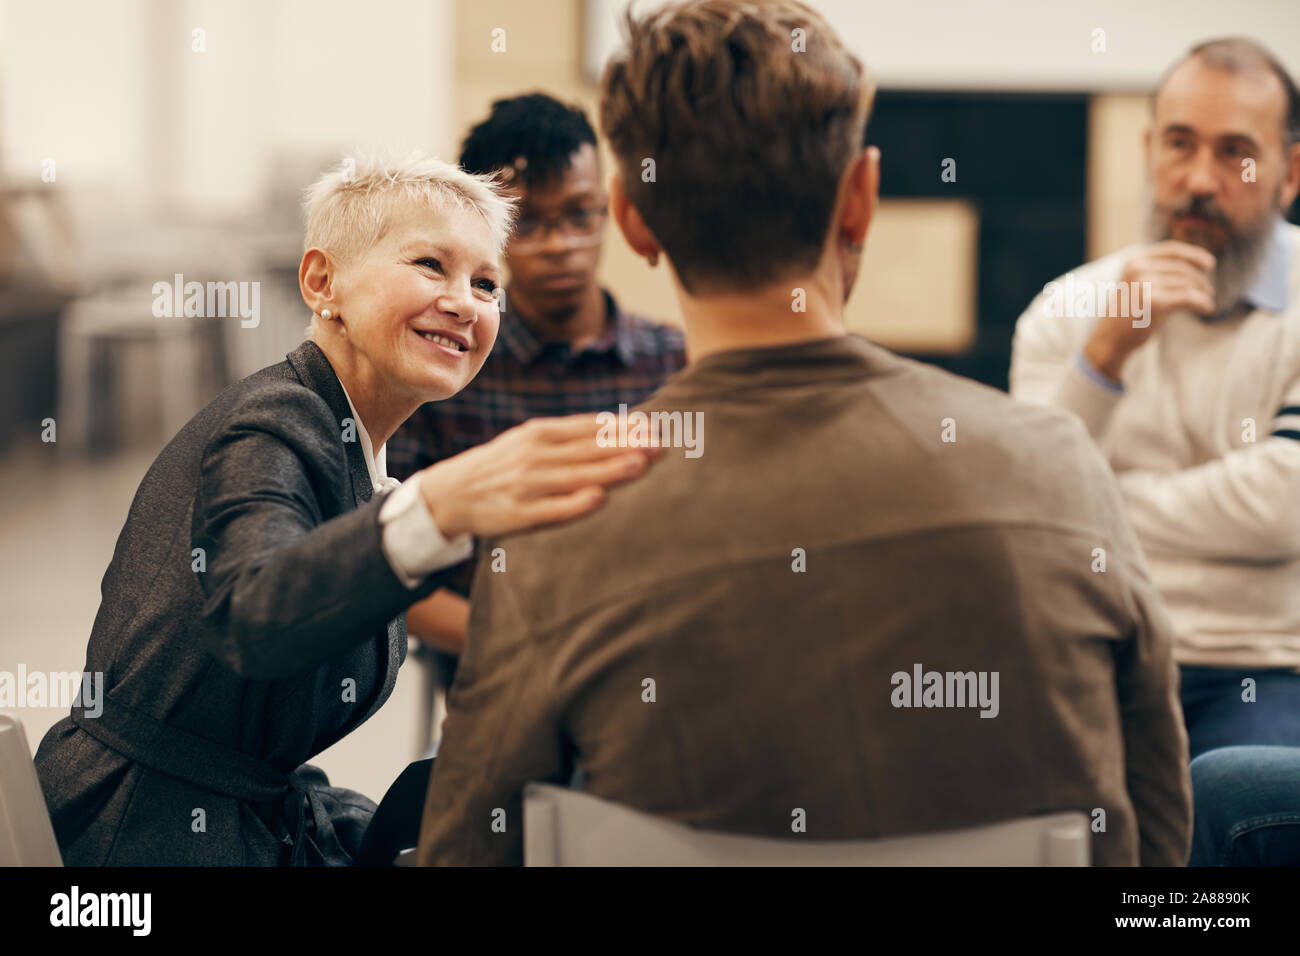 Smiling mature woman avec de courts cheveux blonds de parler au jeune homme qui, assis sur la chaise retour à l'appareil photo pendant la classe thérapeutique Banque D'Images